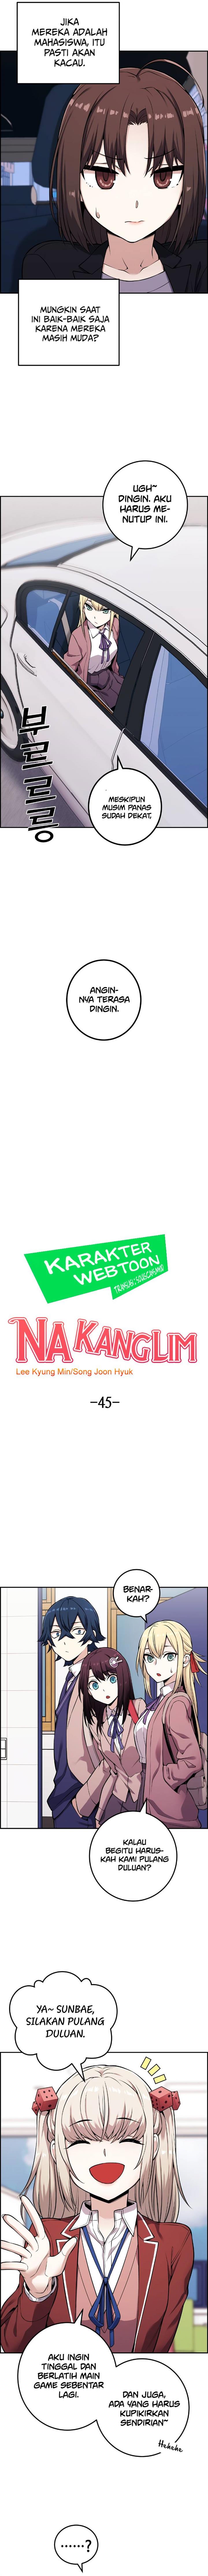 Webtoon Character Na Kang Lim Chapter 45